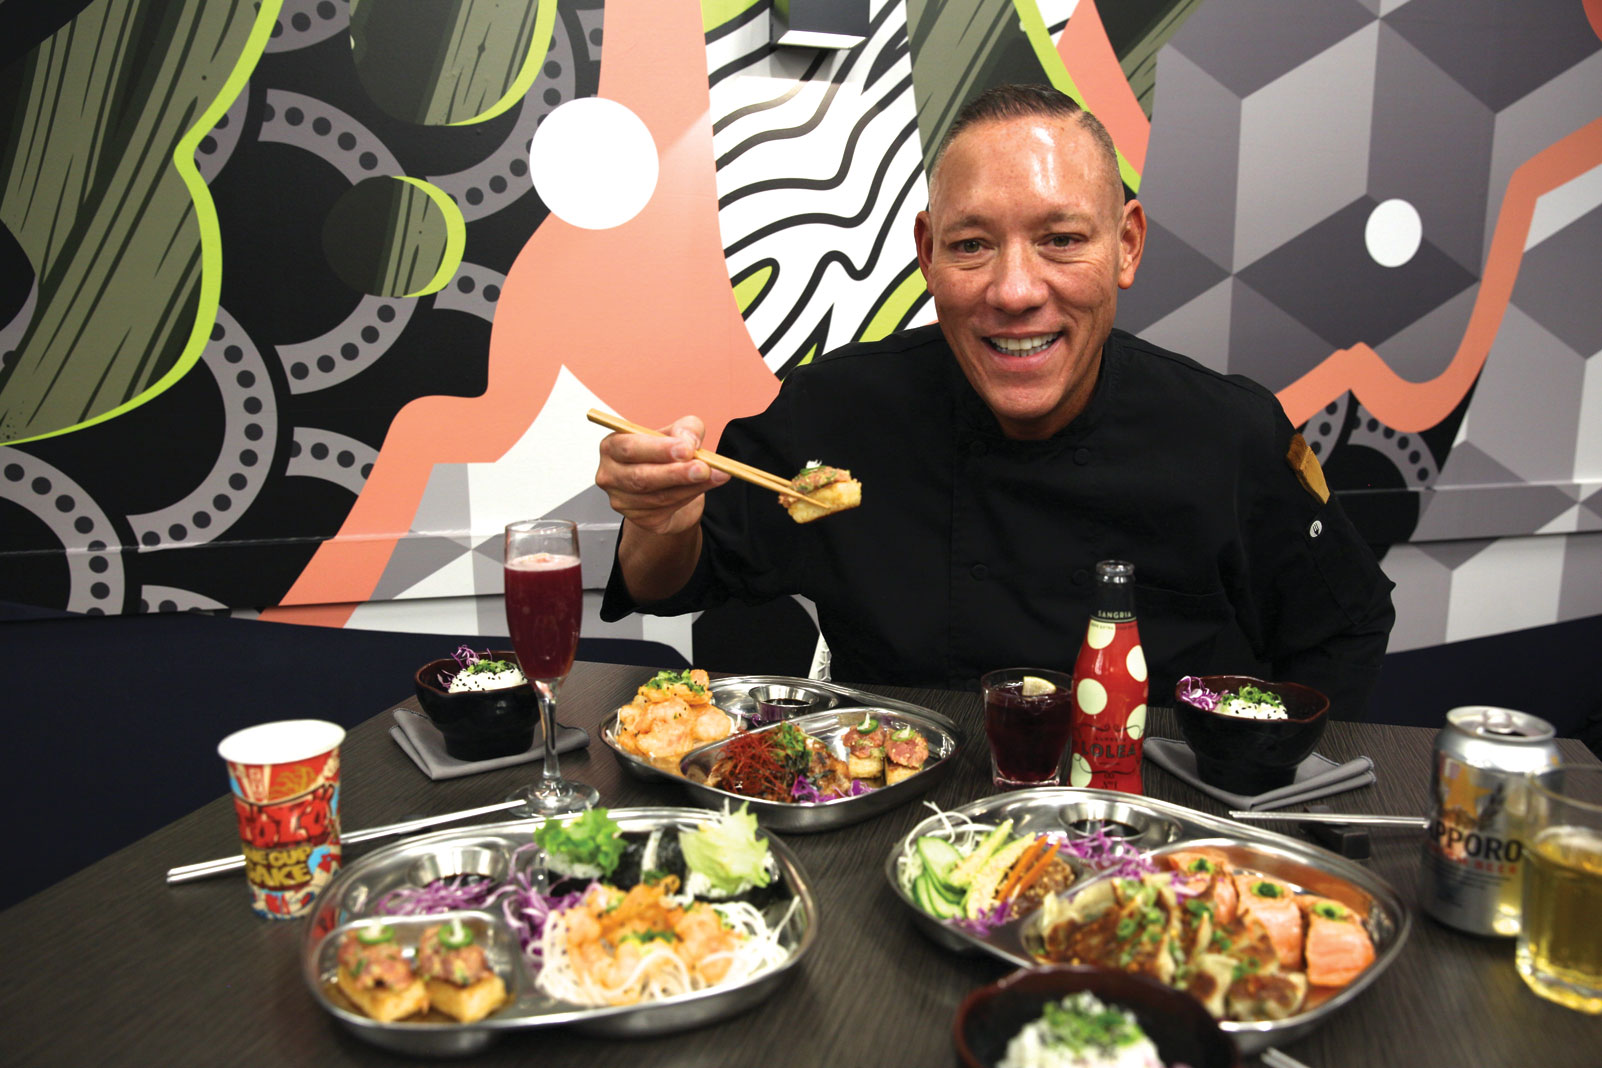 PinkU chef John Sugimura